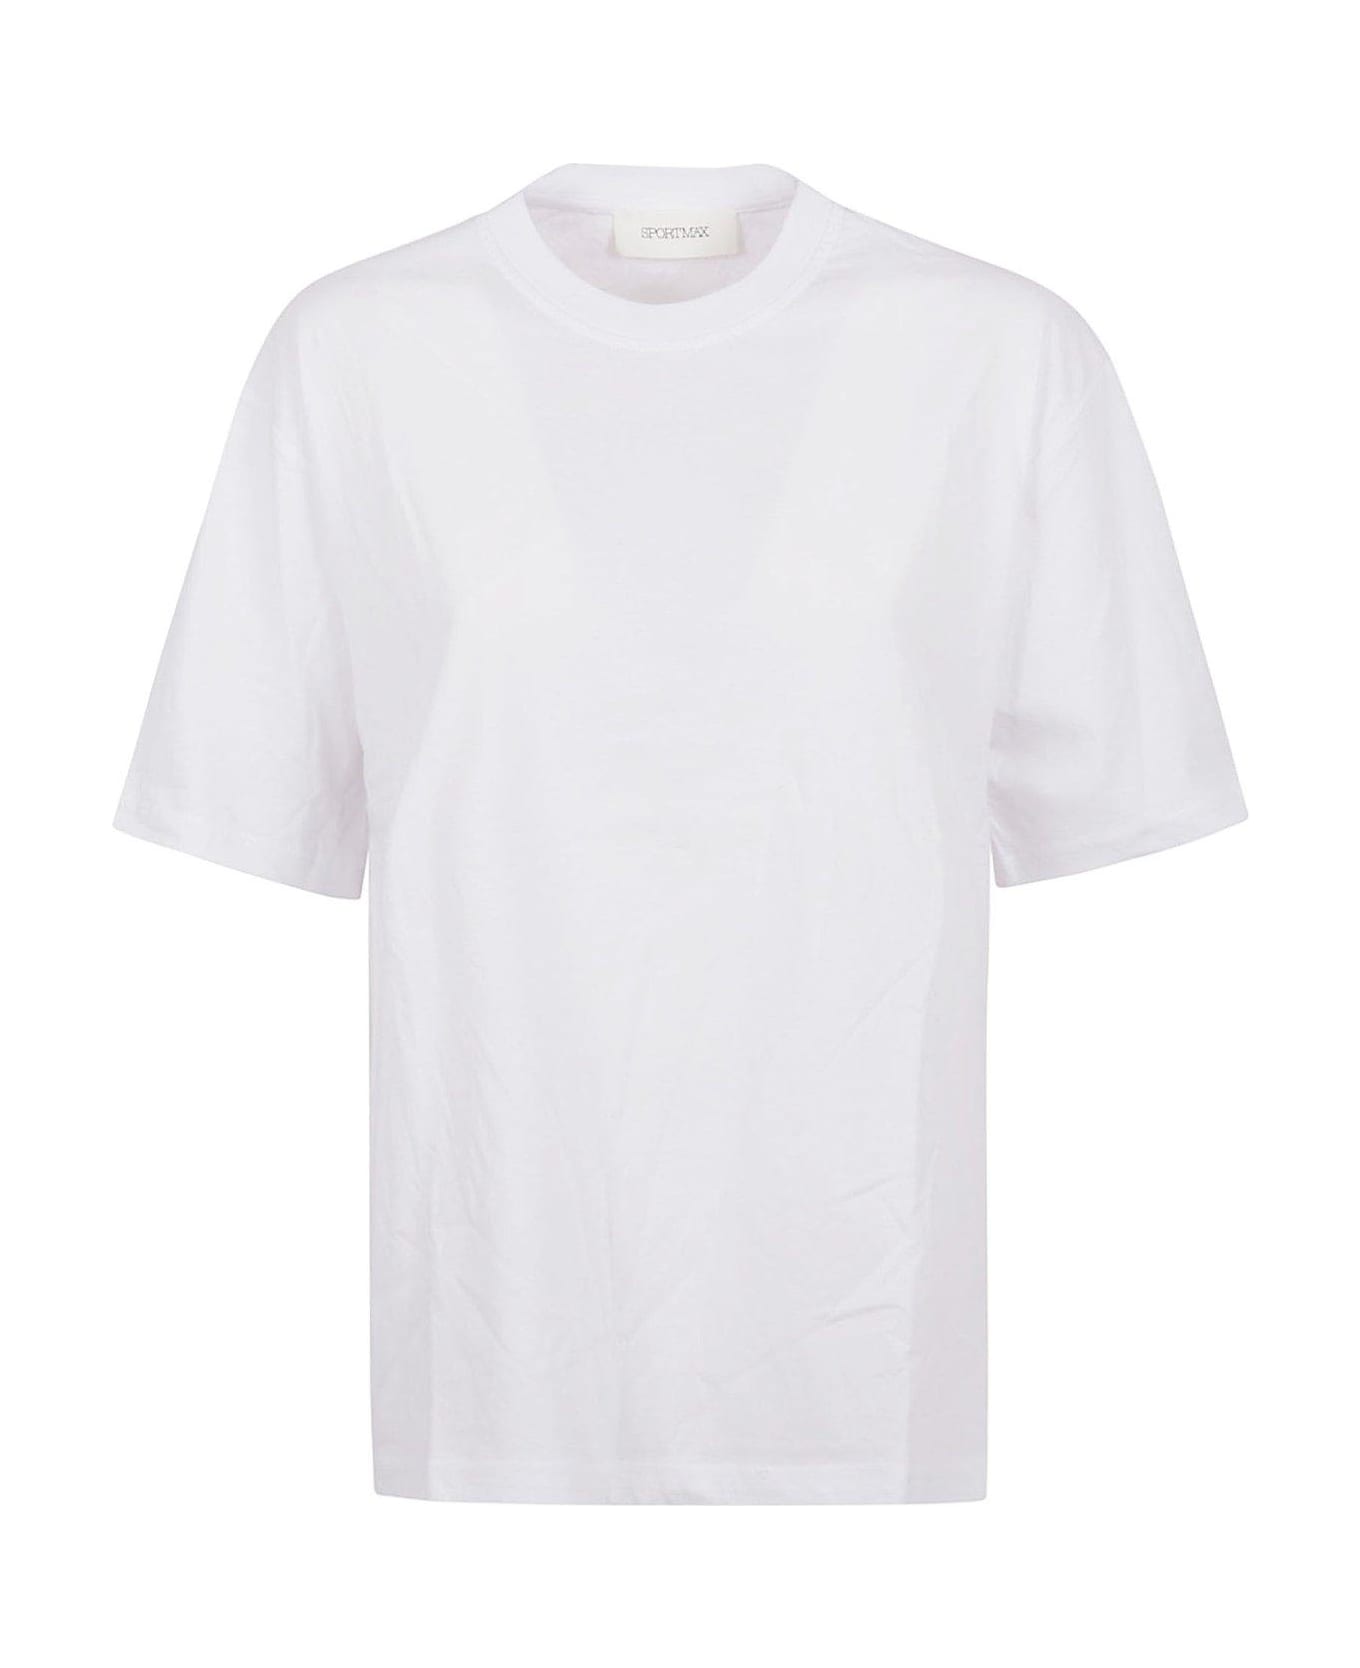 SportMax Cerwneck Short-sleeved T-shirt - POPTICAL WHITE Tシャツ